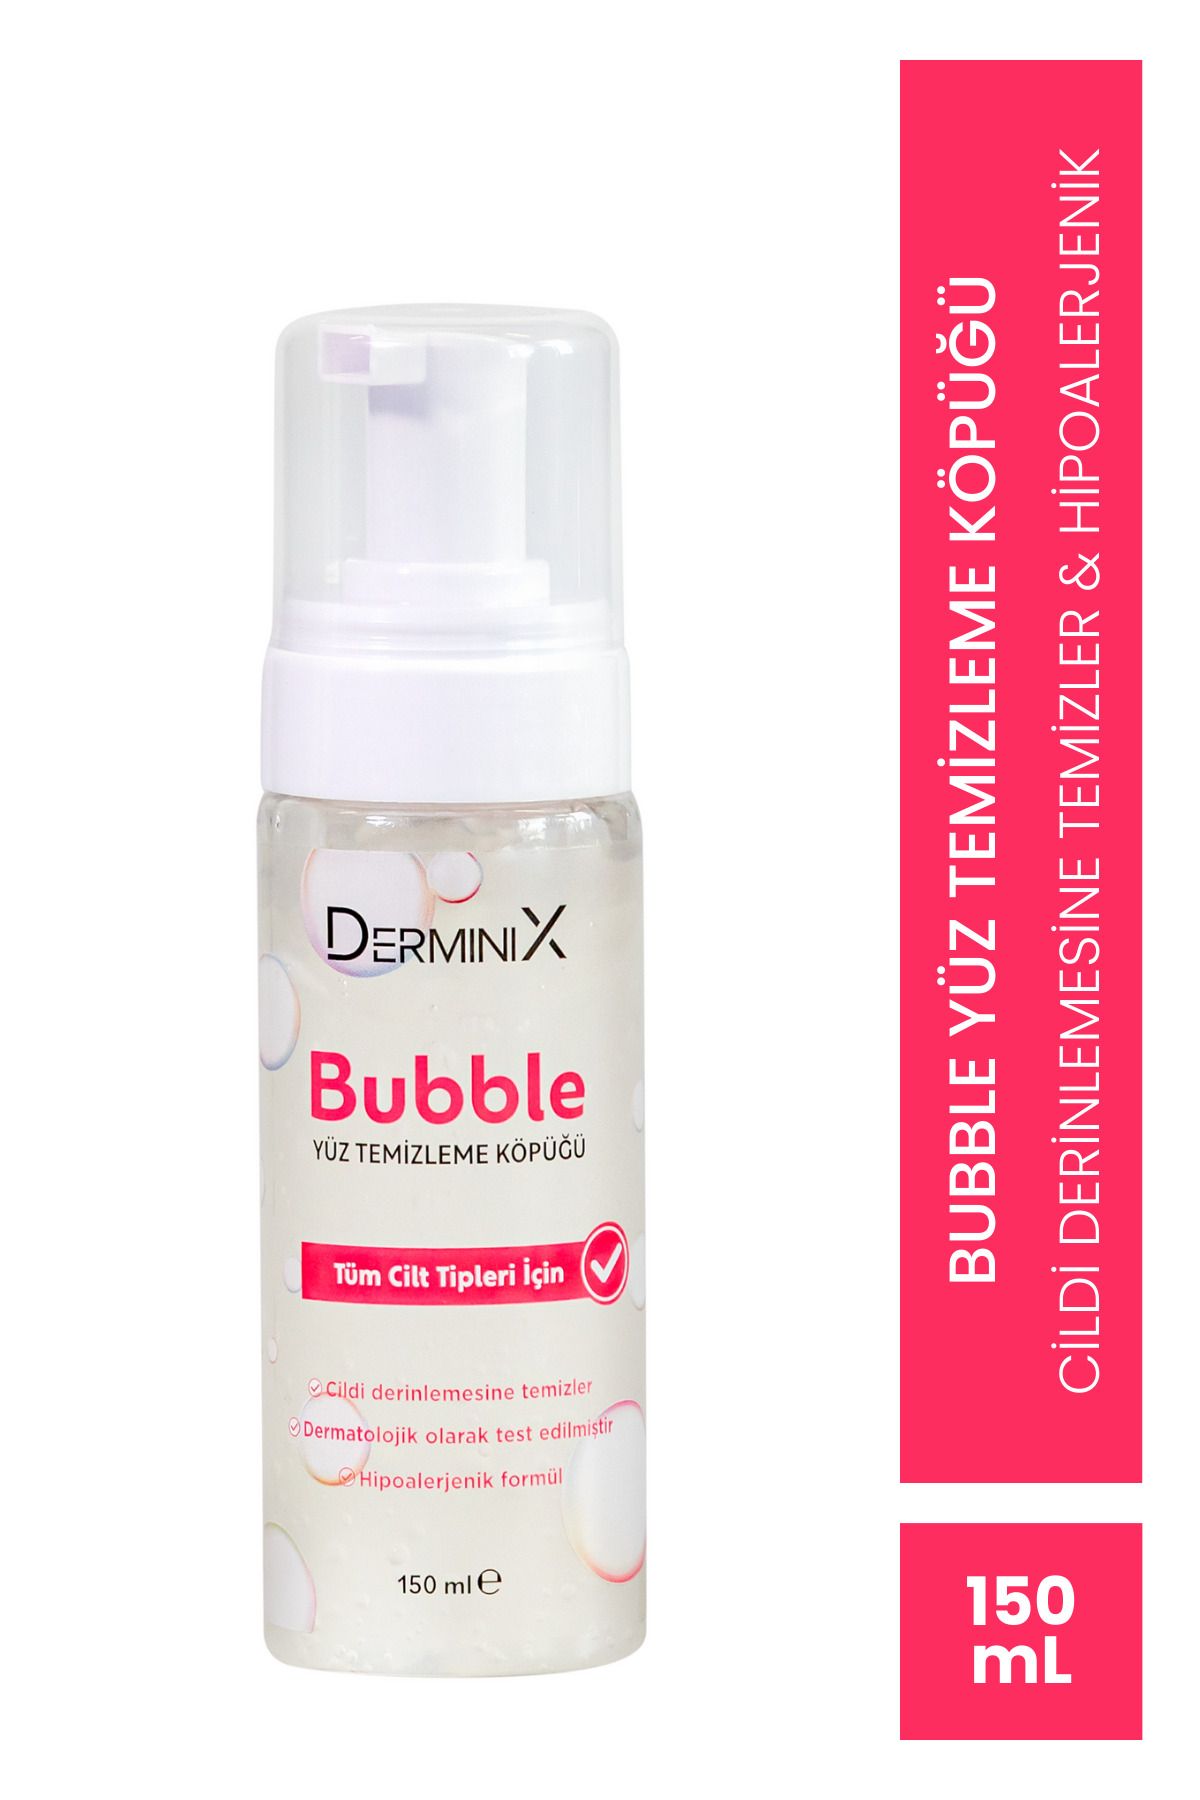 Derminix Bubble Cilt Temizleme Köpüğü